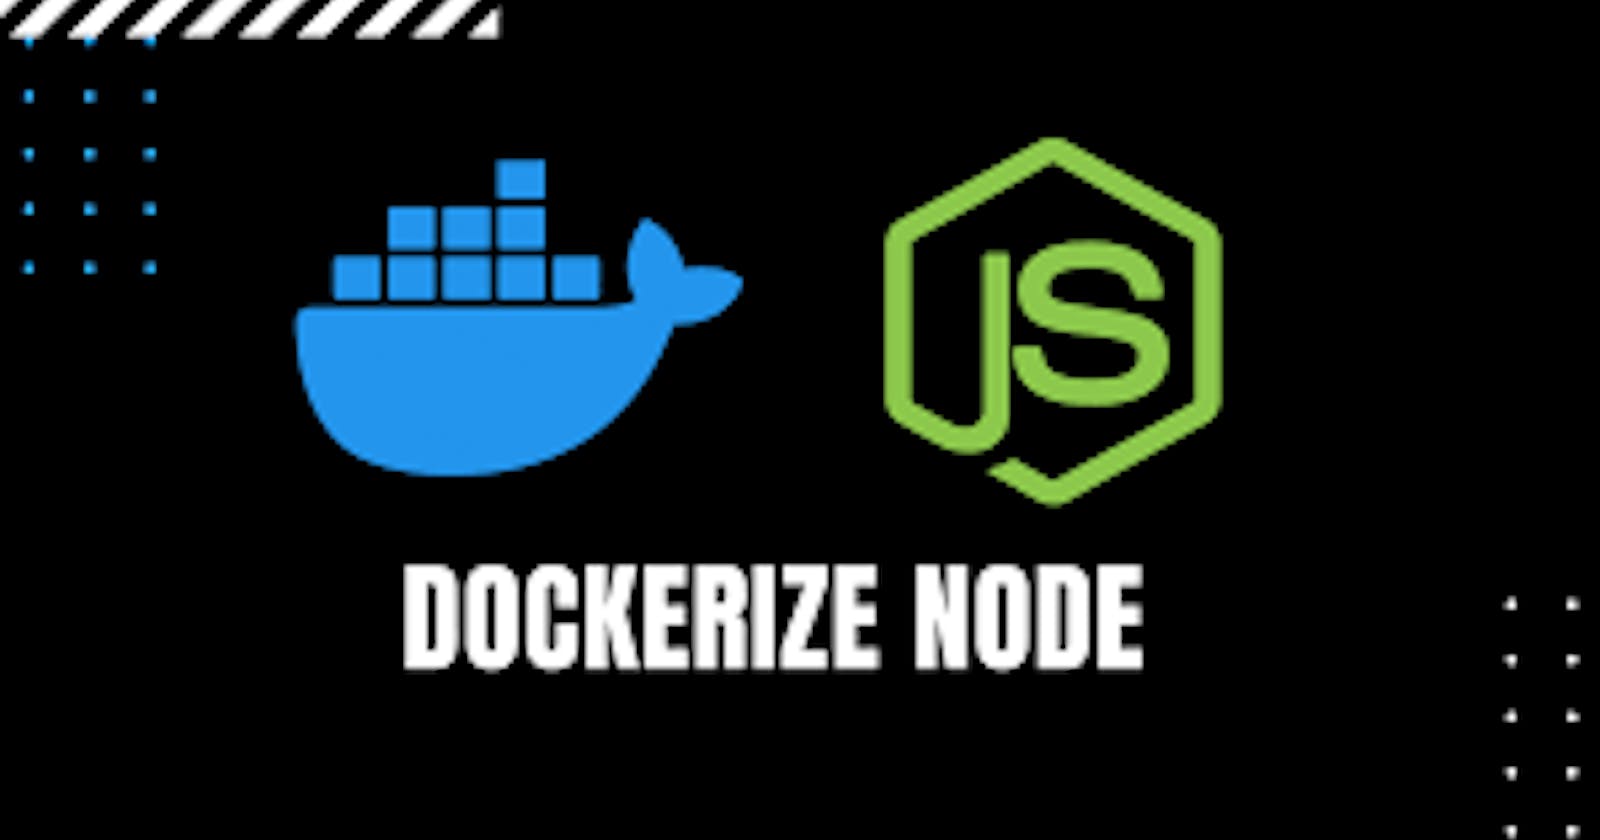 Dockerize your Node.js Application